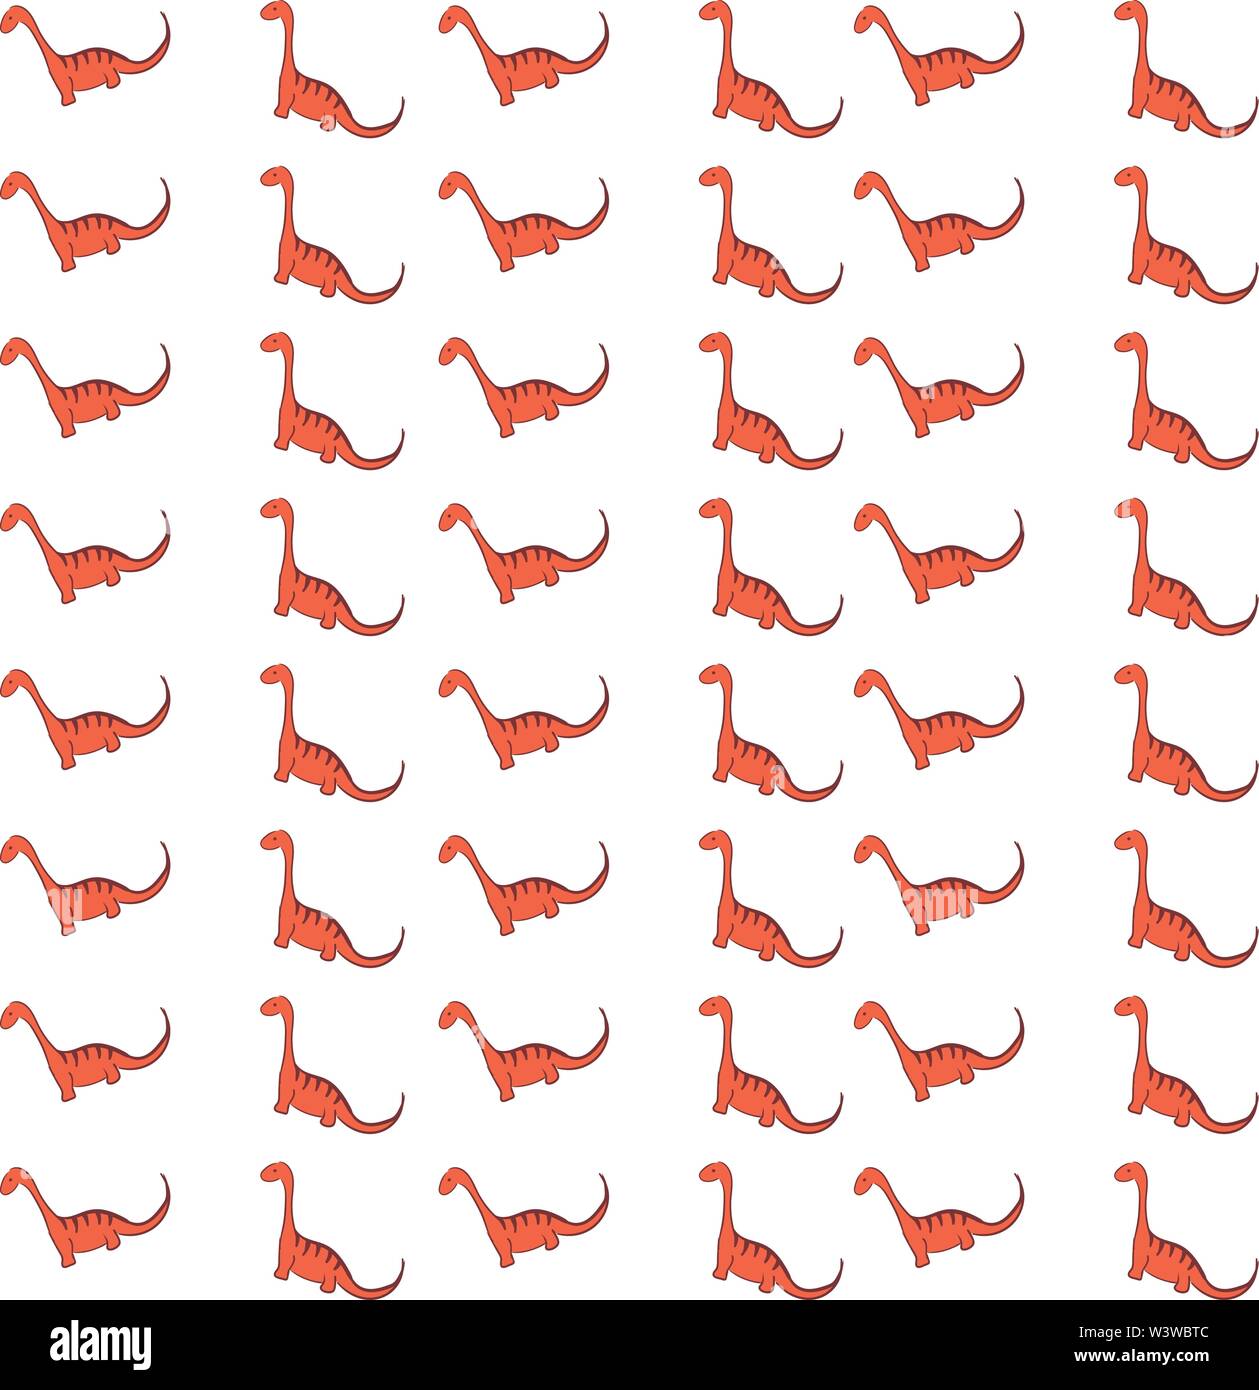 Red dinosaur wallpaper, illustration, vector on white background. Stock Vector